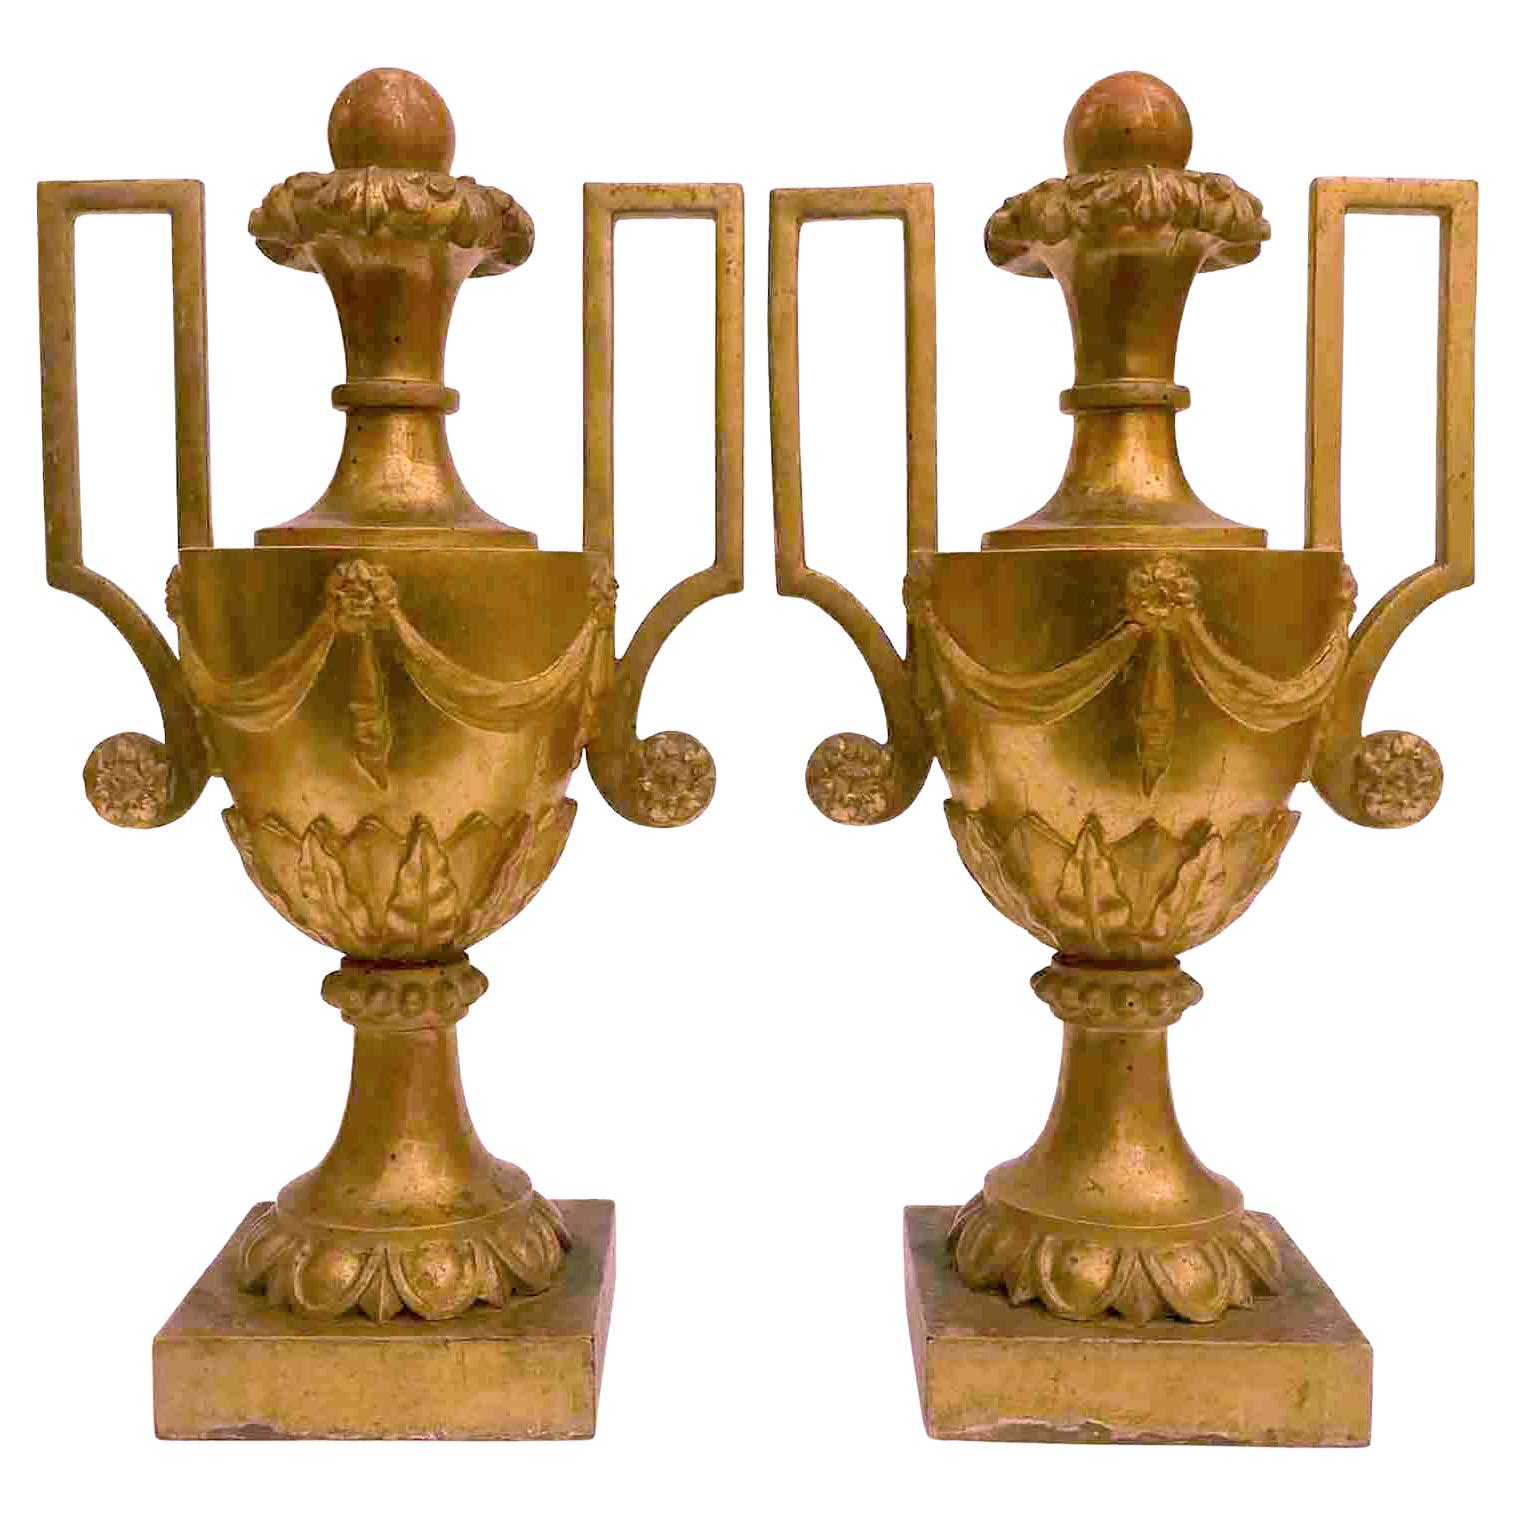 Grande paire de vases italiens du 18ème siècle à poignée dorée sculptée de style néoclassique